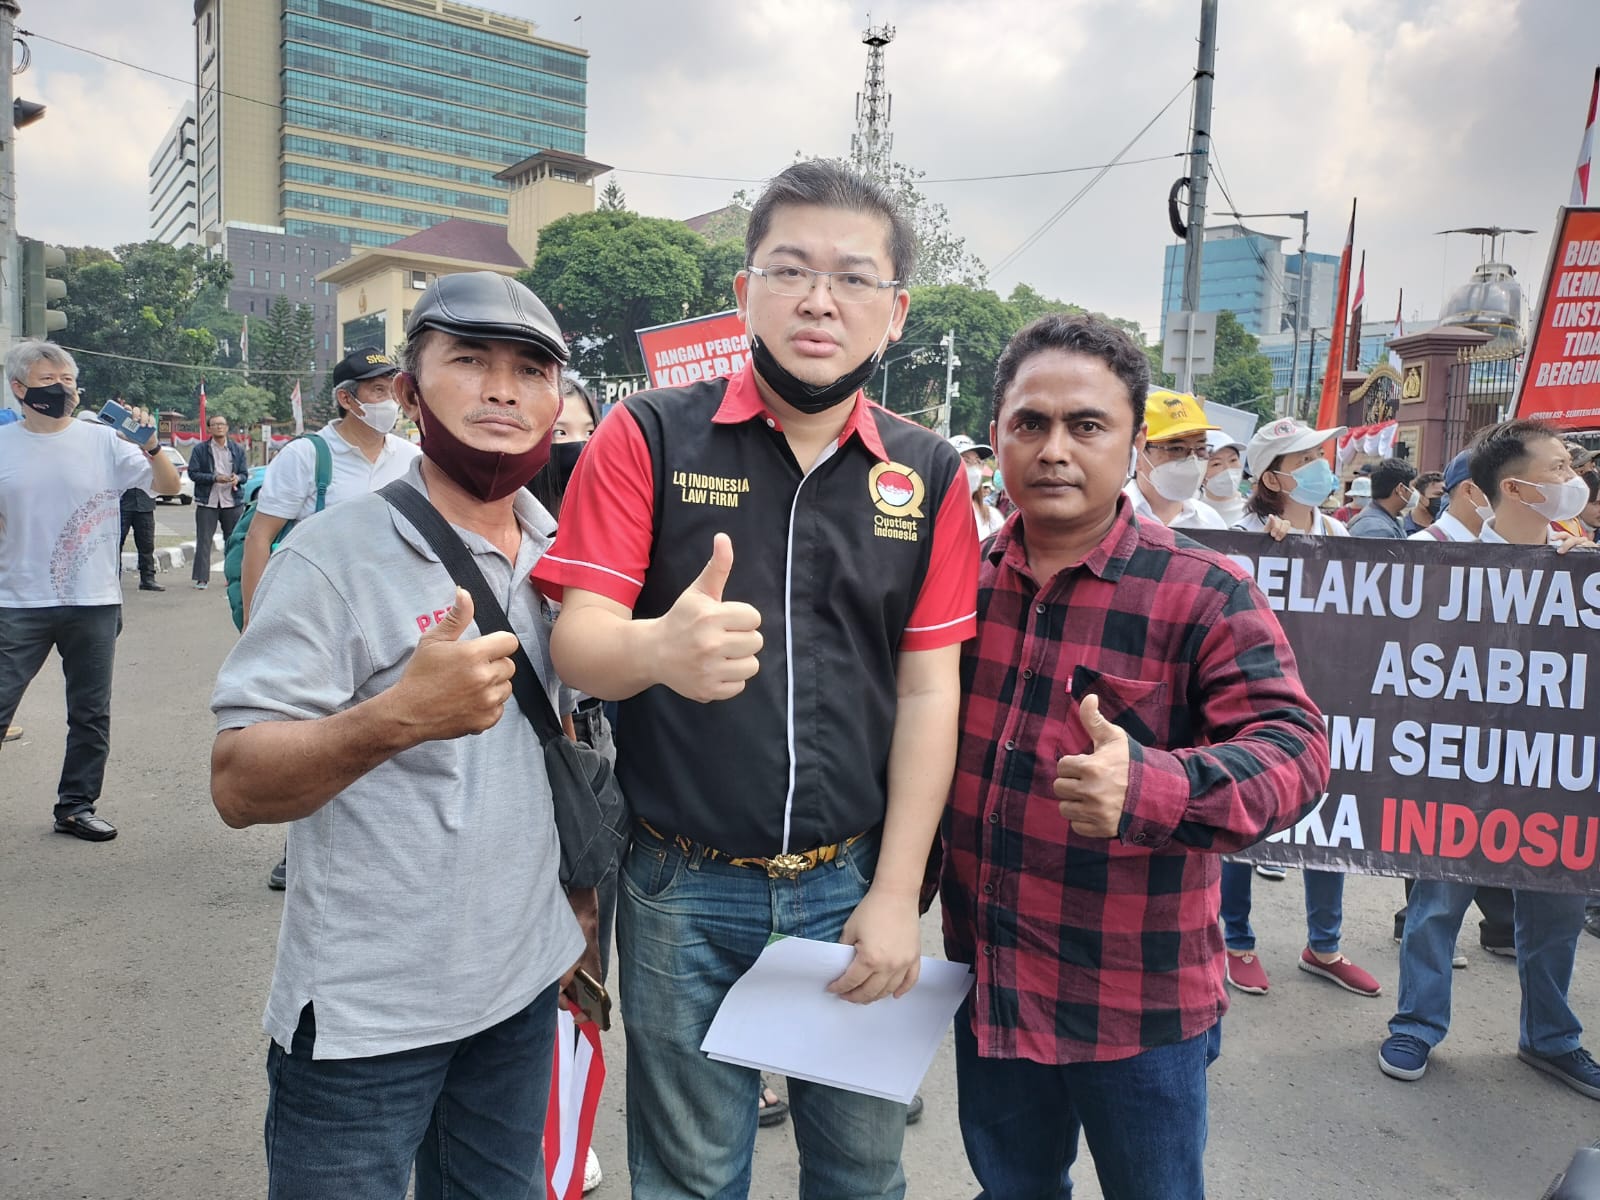 Kembali, LQ Indonesia Lawfirm Bongkar Modus Juristo Lakukan Klaim Fiktif Kritis Dan Jiwa